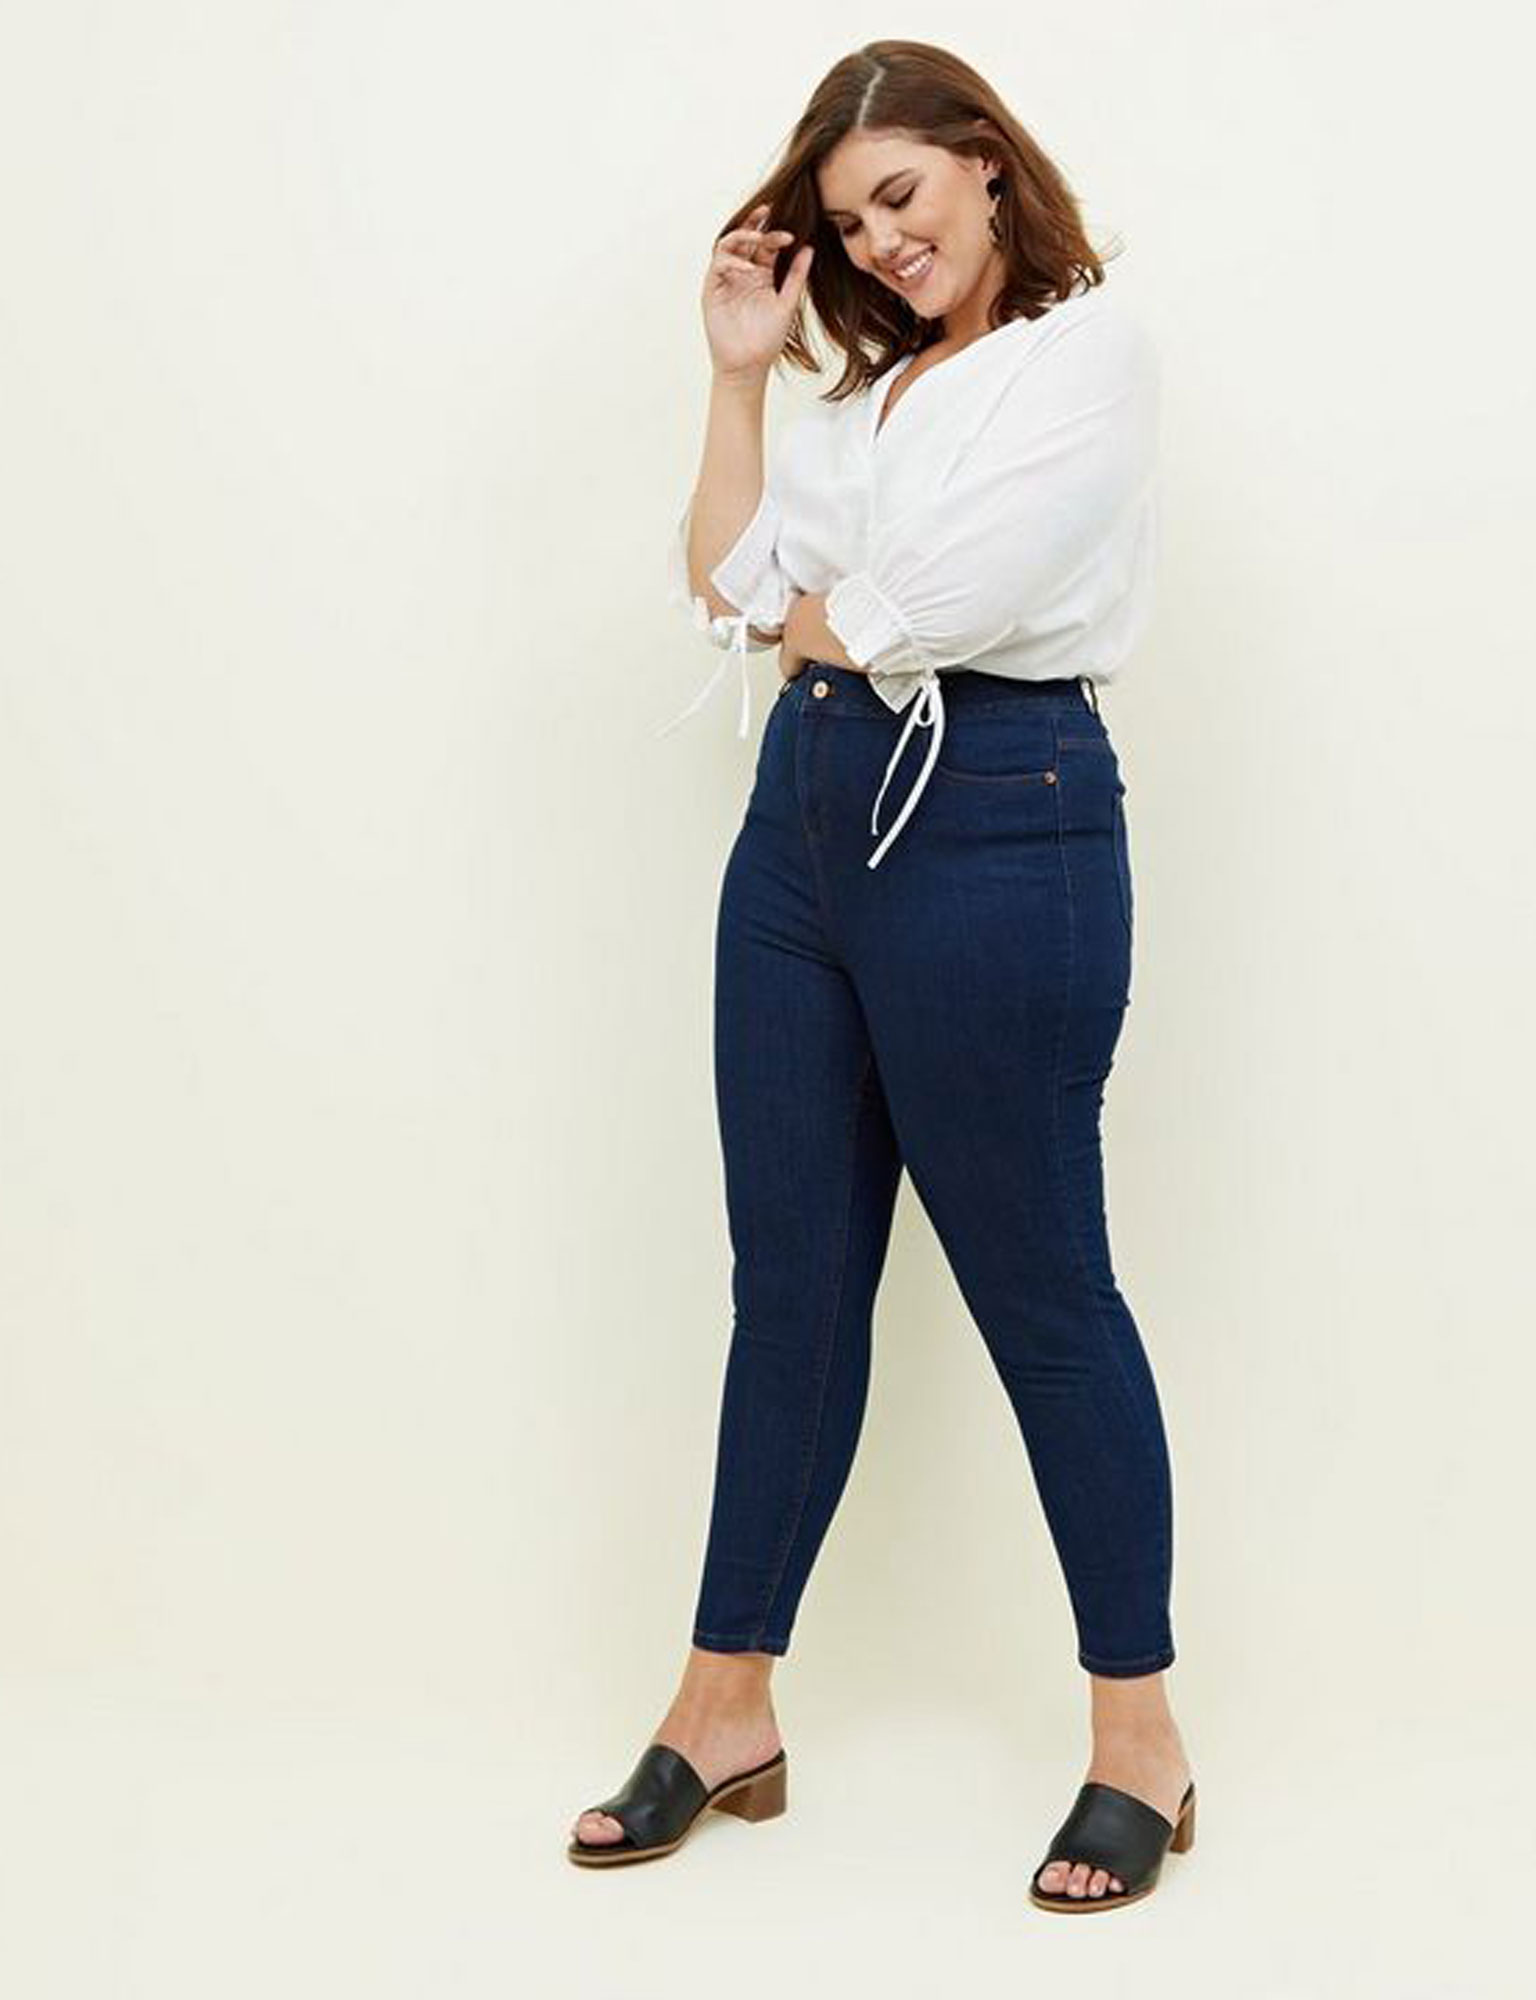 Mode grande taille : 20 pantalons stylés pour les rondes - Femme Actuelle